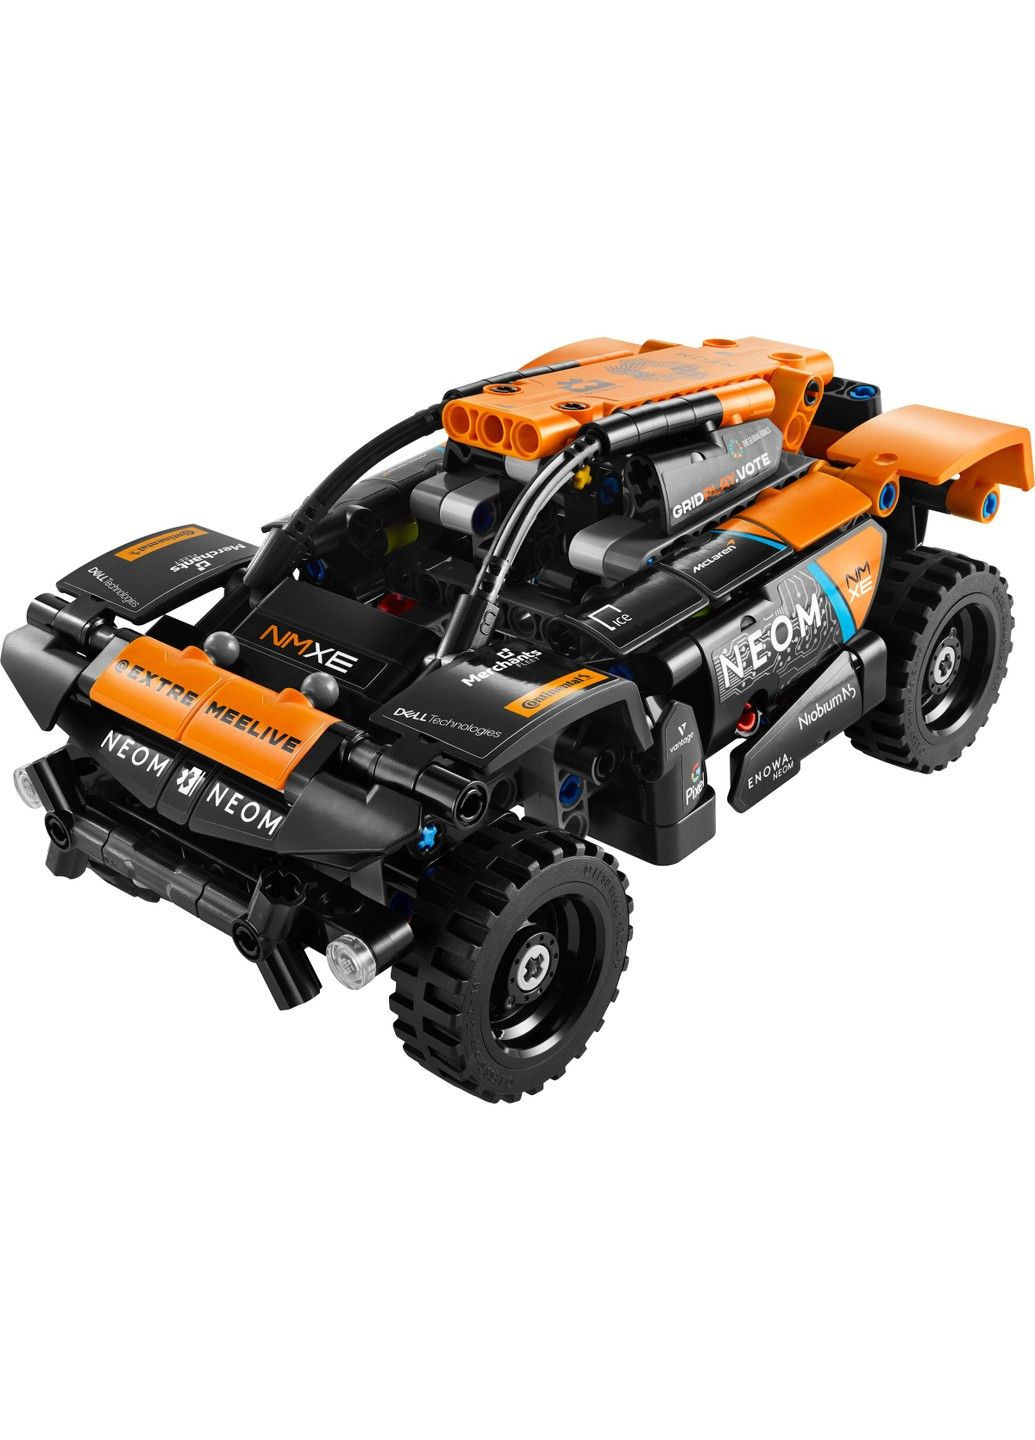 Конструктор Technic Автомобіль для перегонів NEOM McLaren Extreme E 252 деталі (42166) Lego (285119806)